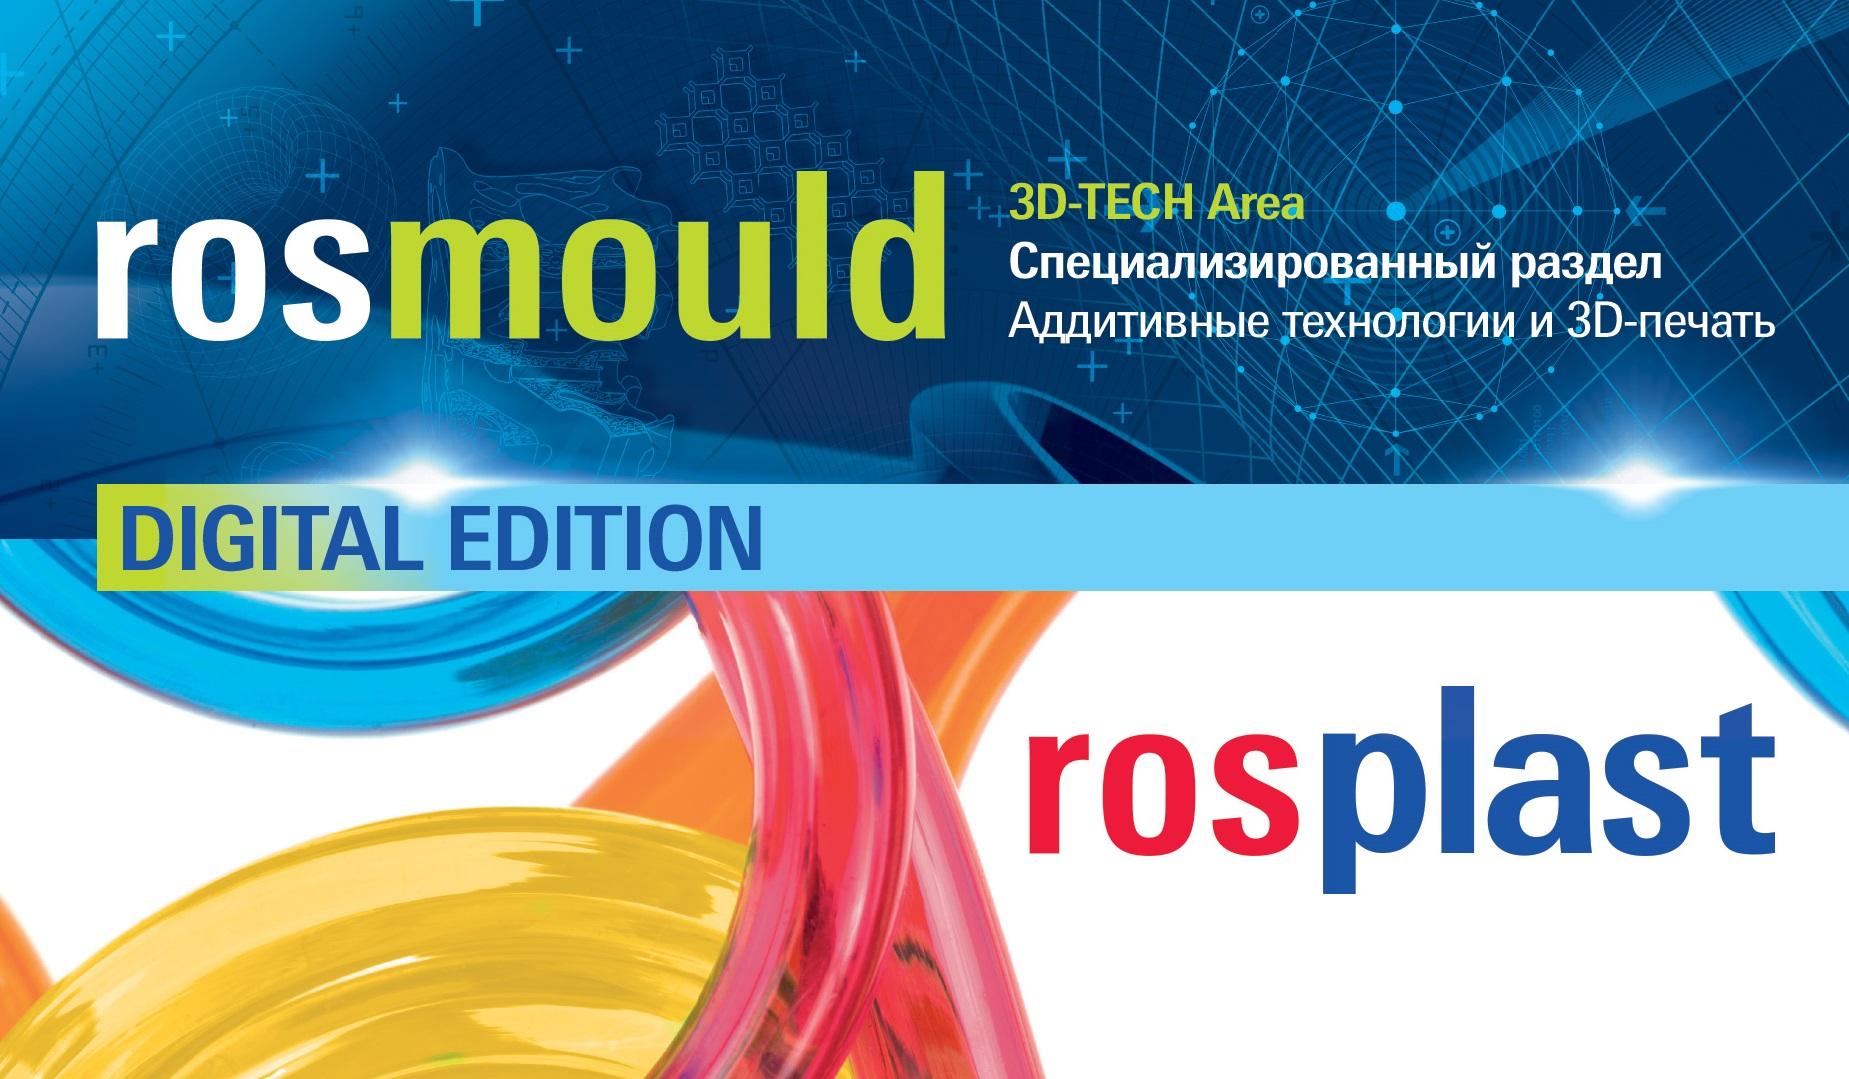 Главные промышленные выставки Rosmould и Rosplast состоятся с 15 по 17 июня 2021 года в МВЦ «Крокус Экспо»